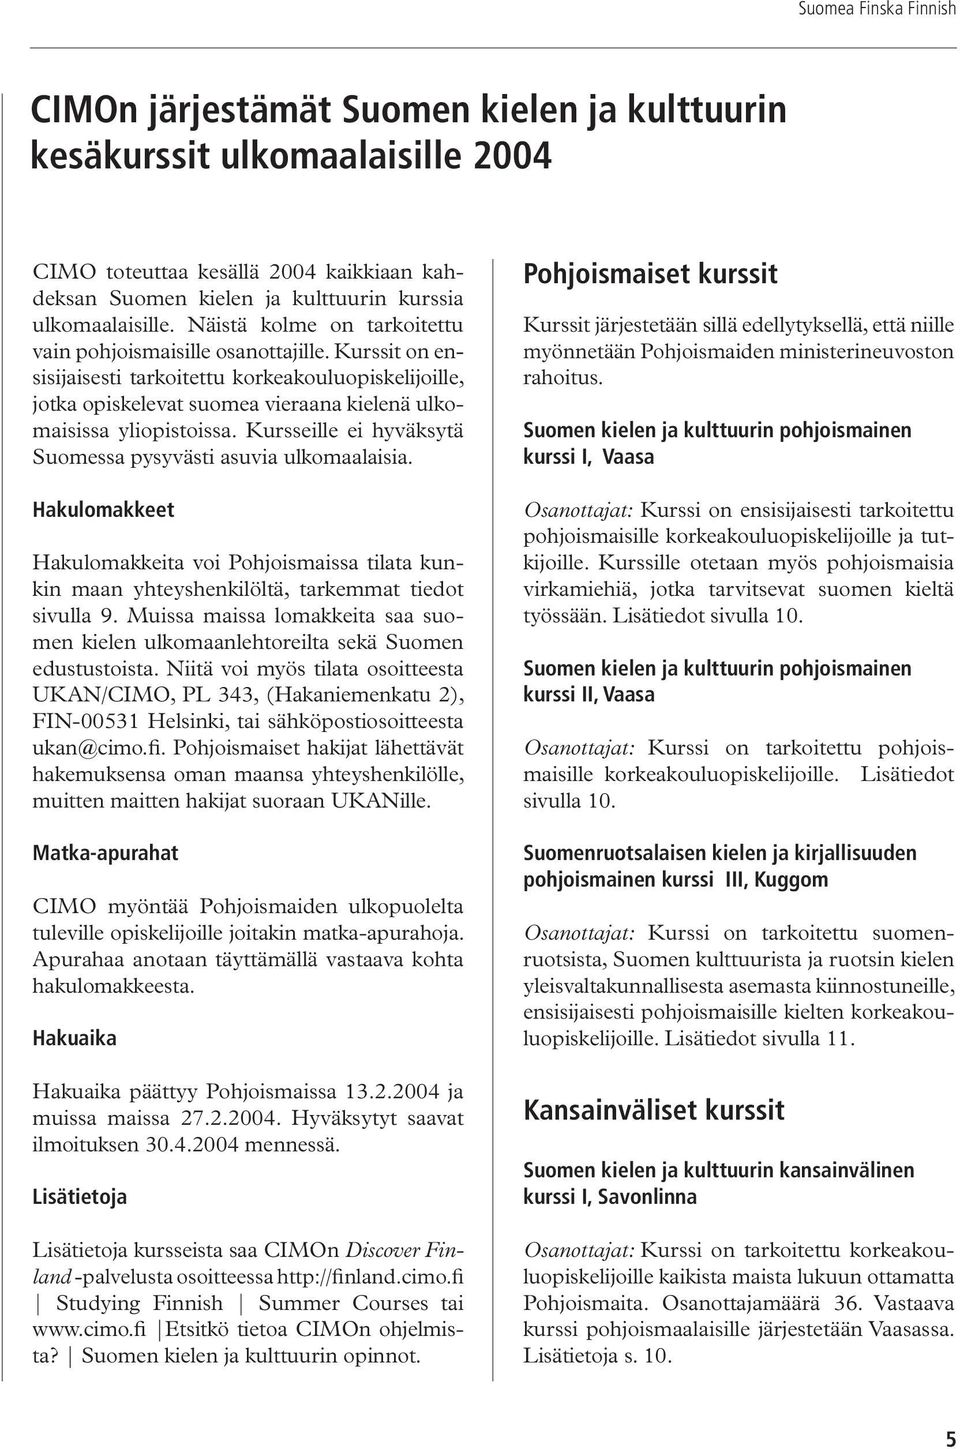 Kursseille ei hyväksytä Suomessa pysyvästi asuvia ulkomaalaisia. Hakulomakkeet Hakulomakkeita voi Pohjoismaissa tilata kunkin maan yhteyshenkilöltä, tarkemmat tiedot sivulla 9.